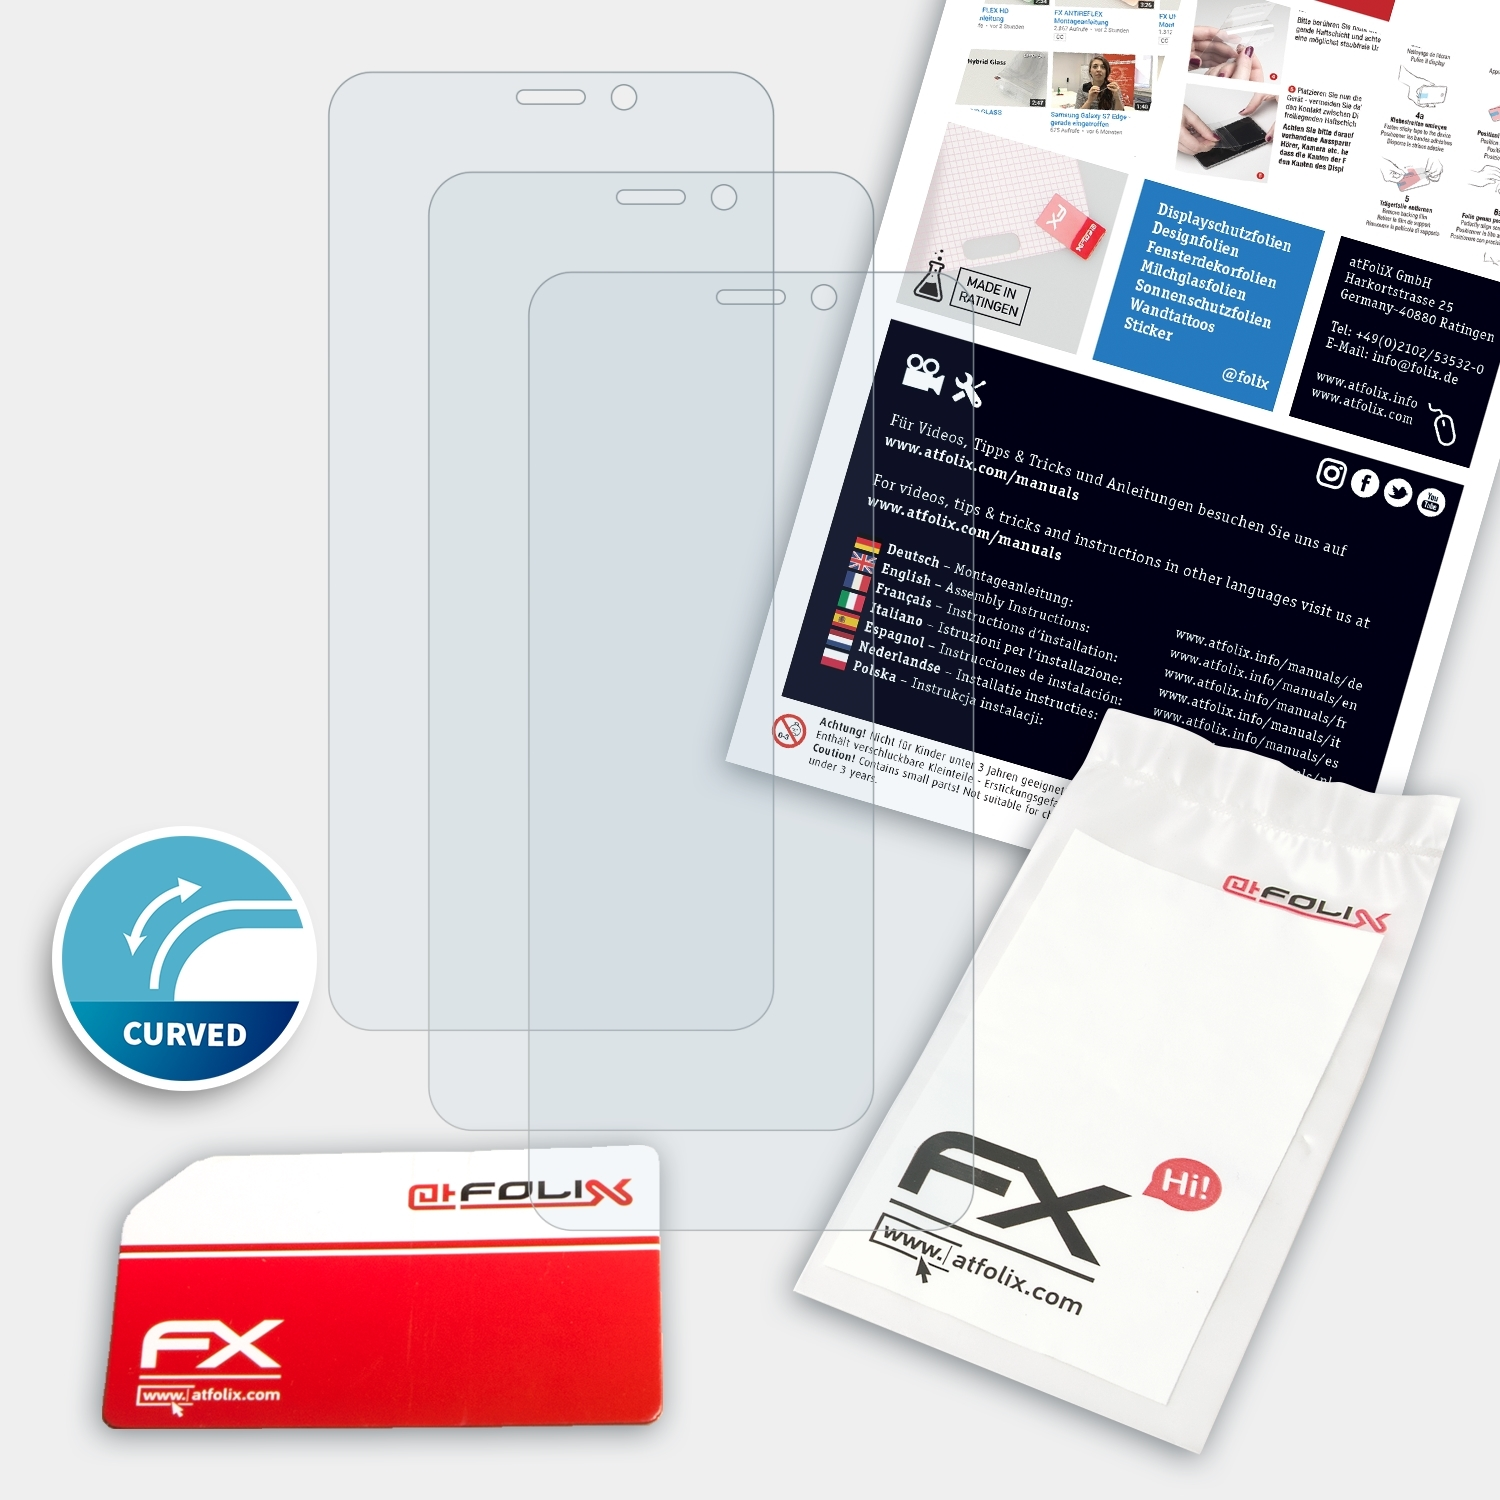 Power FX-ActiFleX 3L) 3x Displayschutz(für Ulefone ATFOLIX